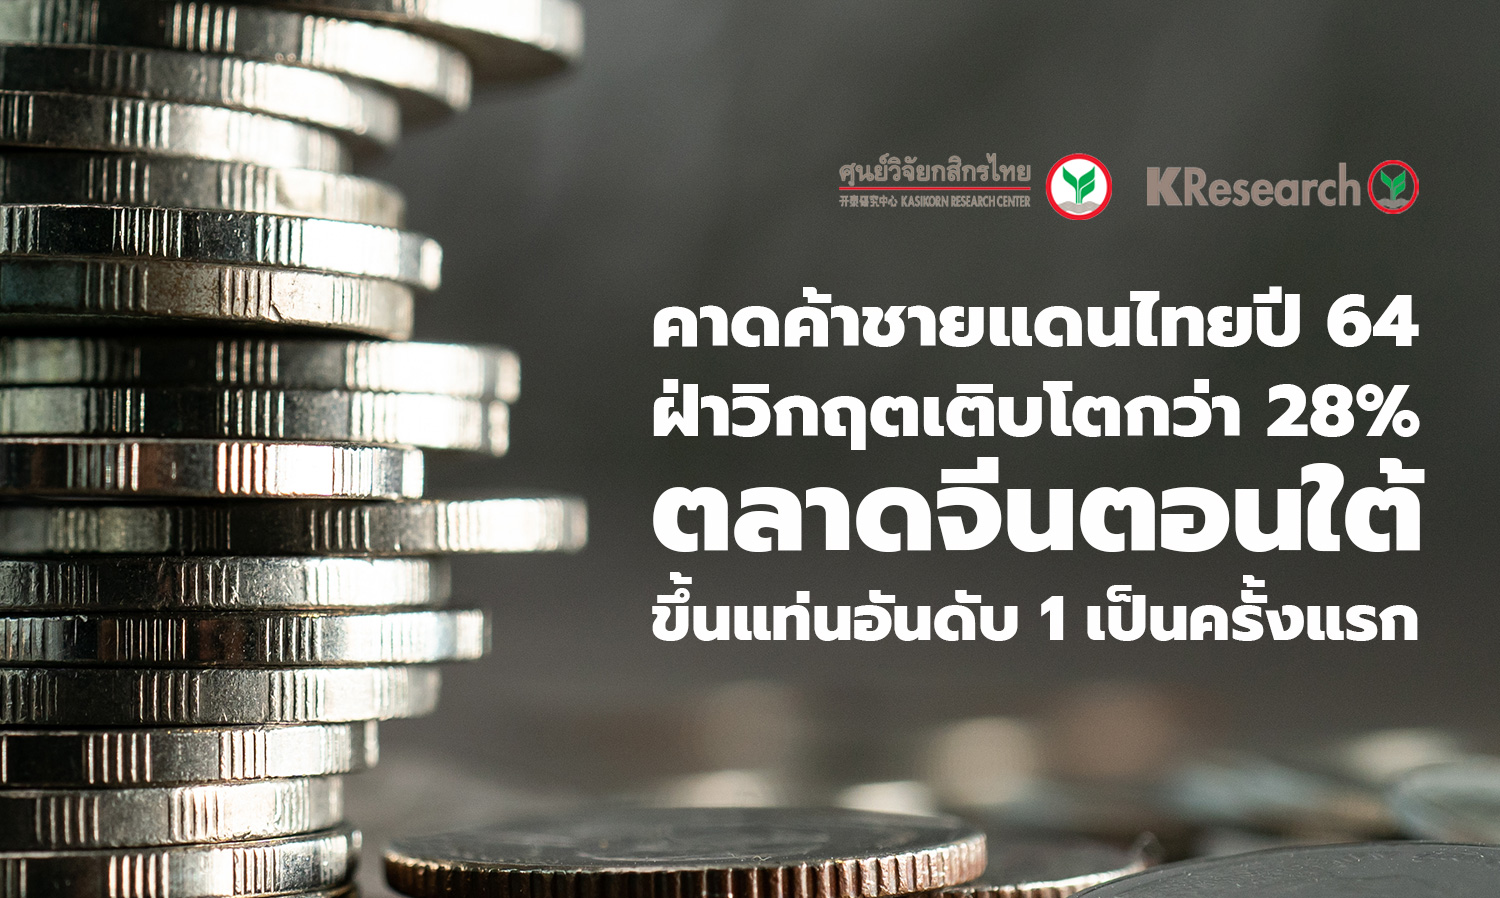 คาดค้าชายแดนไทยปี 64 ฝ่าวิกฤตเติบโตกว่า 28% ตลาดจีนตอนใต้ขึ้นแท่นอันดับ 1 เป็นครั้งแรก (ศูนย์วิจัยกสิกรไทย)